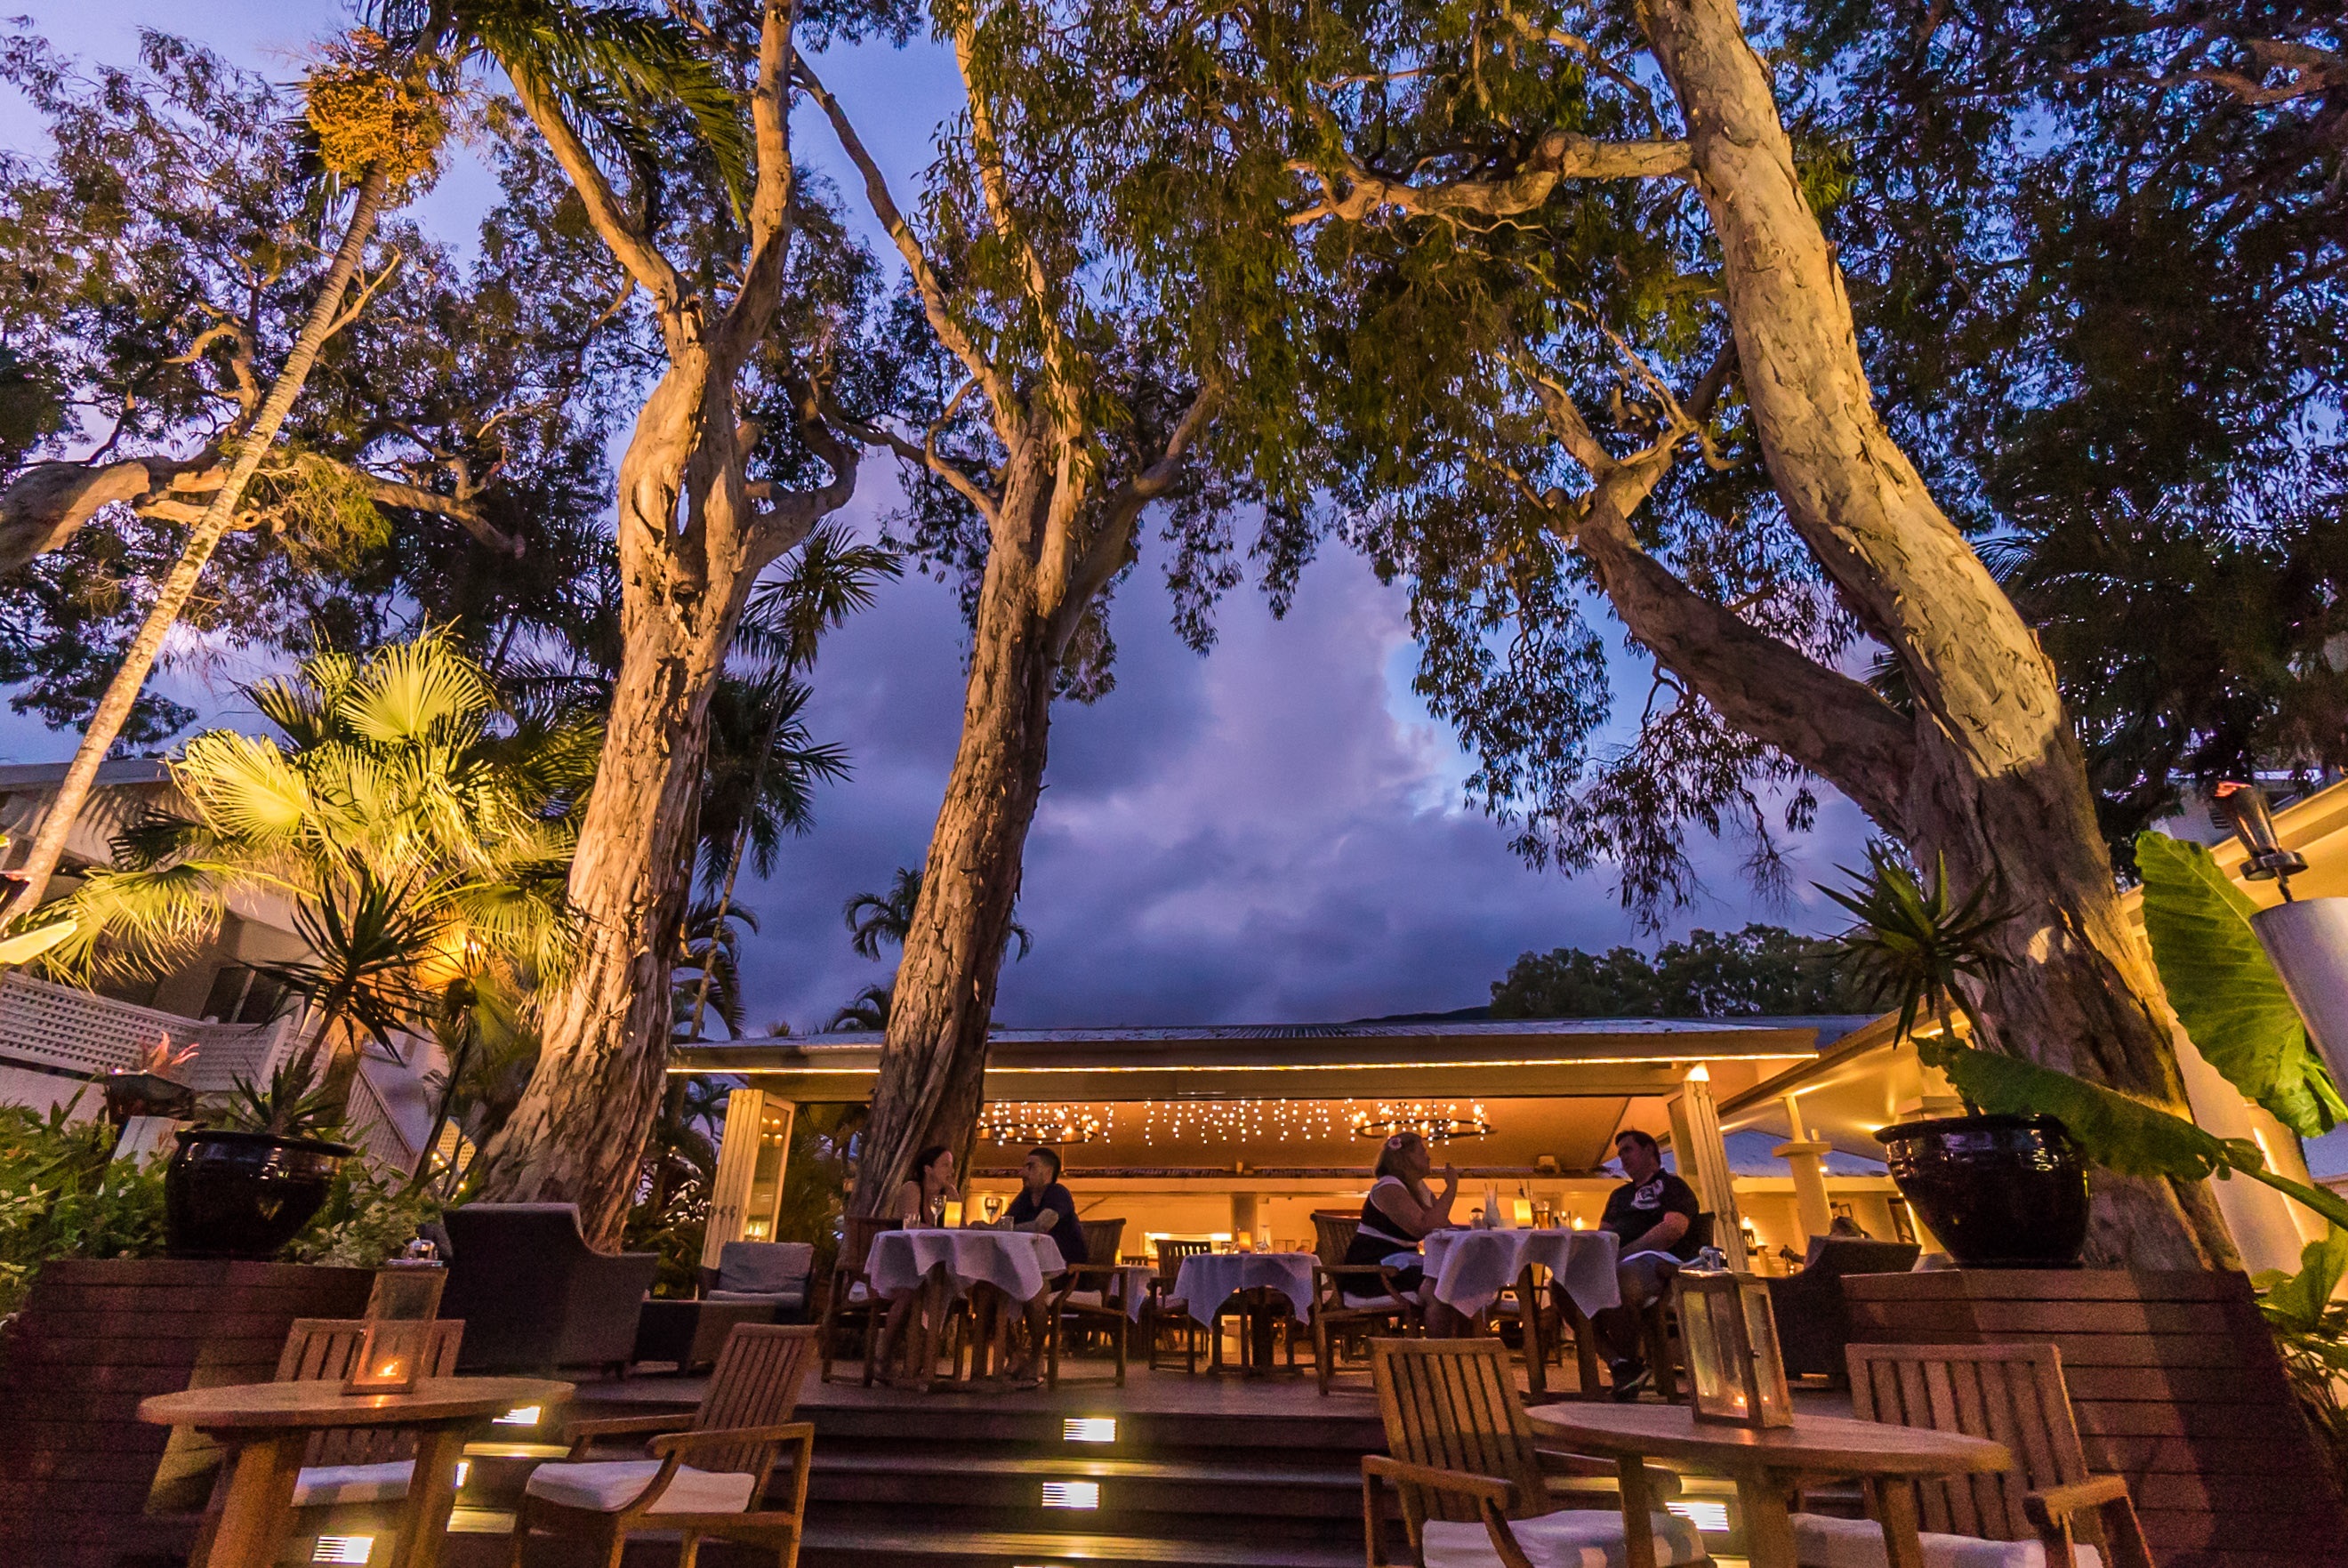 <p>パームコーブの真ん中、樹齢300年の木々と</p>
<p>海を目の前に眺めることが出来るオープンデッキが印象的なレストラン。</p>
